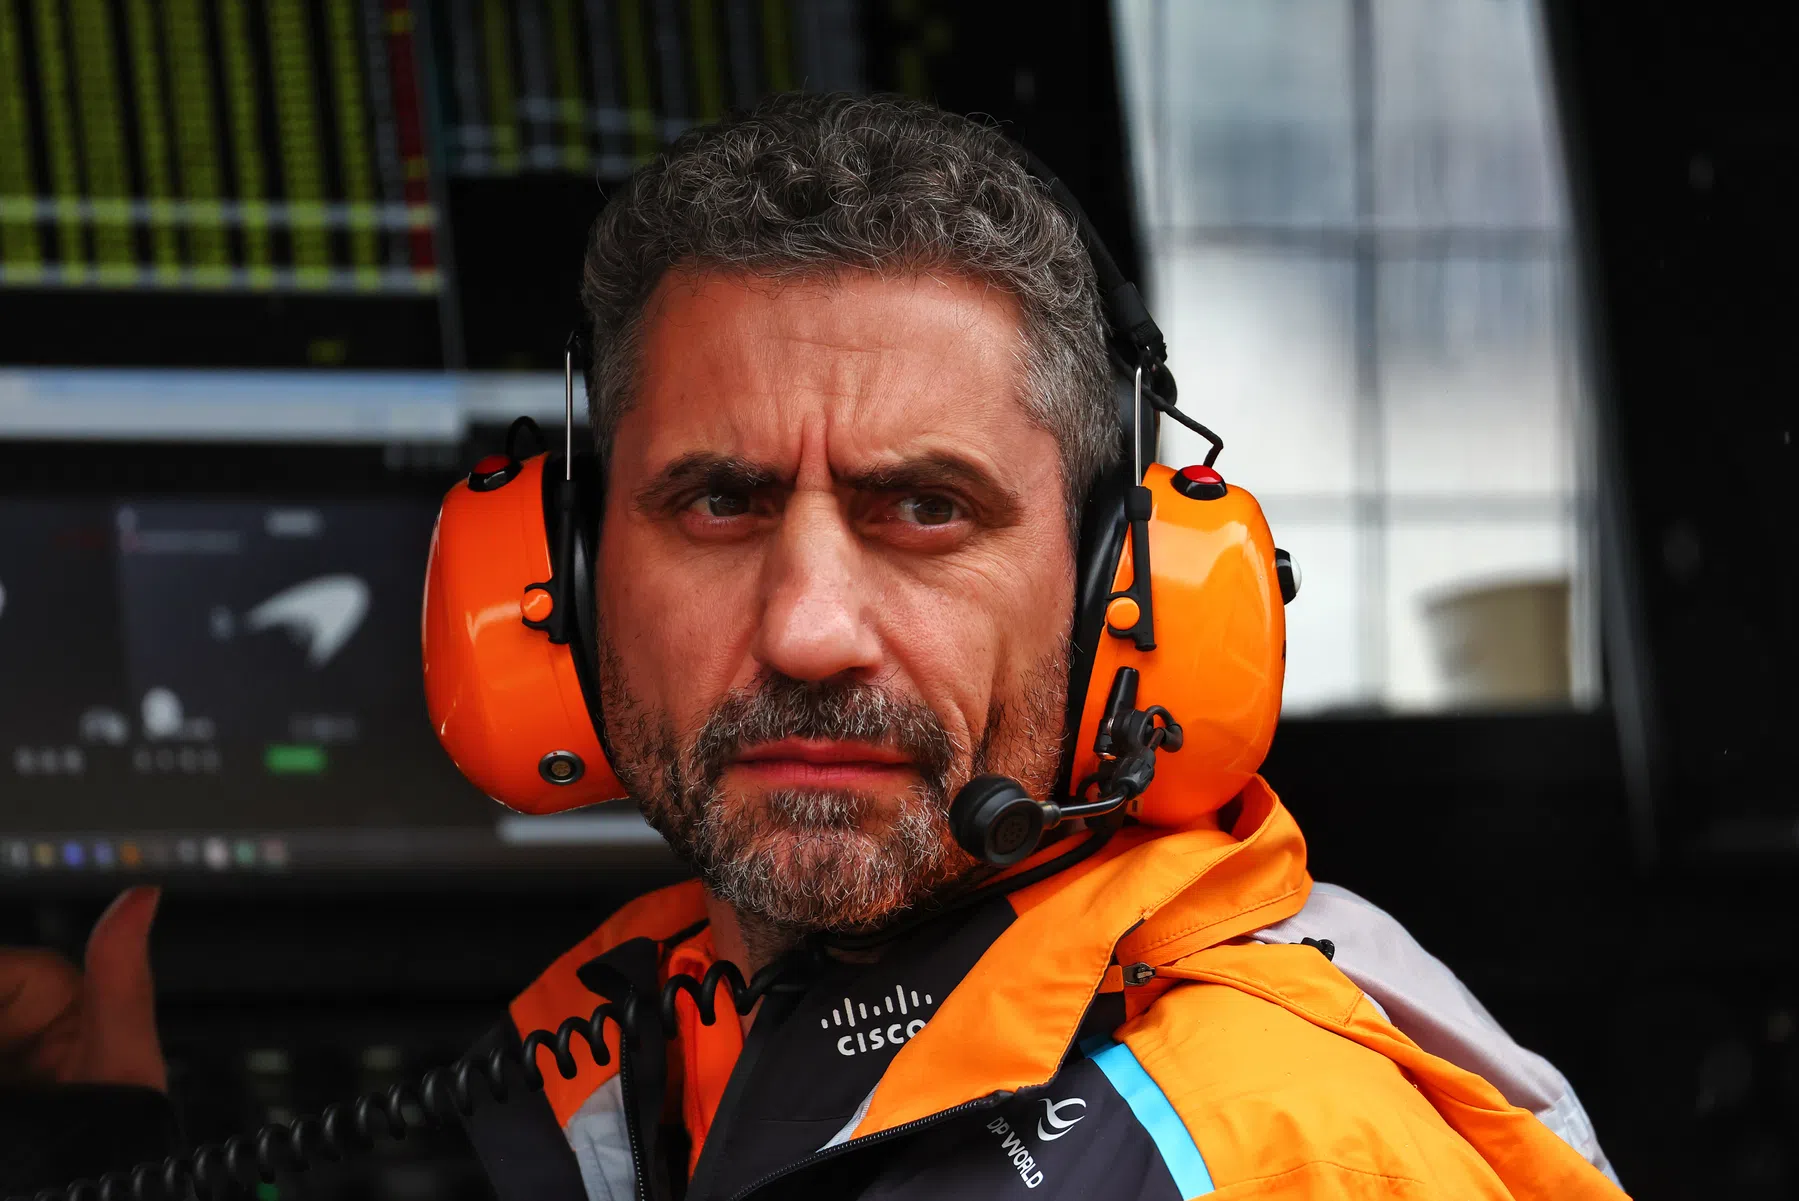 McLaren fait appel des résultats des qualifications du Grand Prix d'Autriche